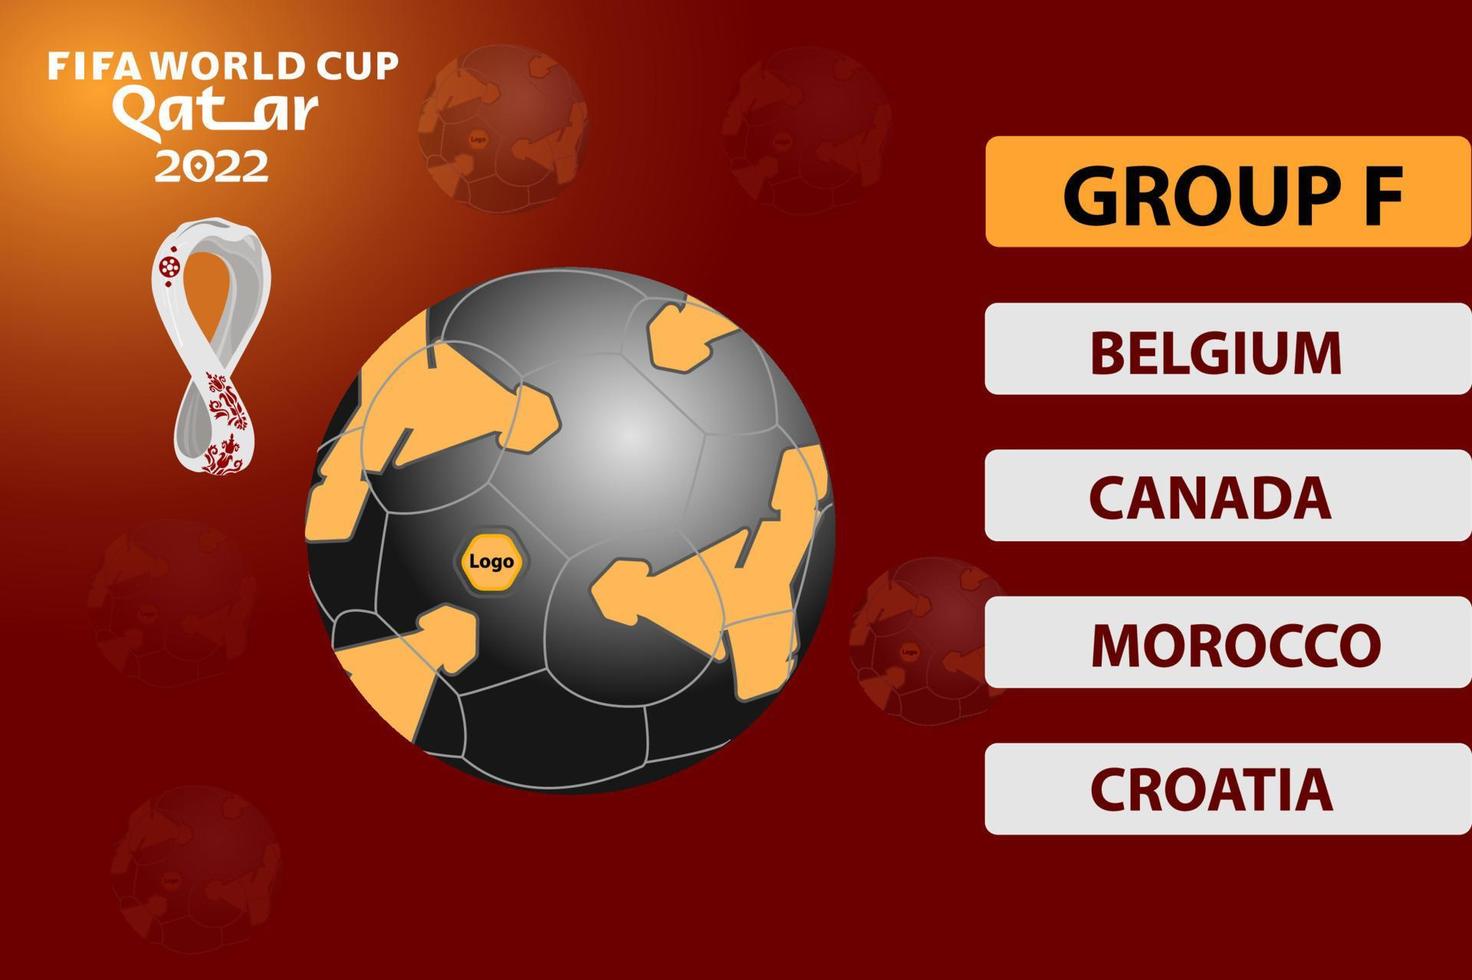 fifa world cup 2022 qatar football group design banner fichier de rendu vecteur